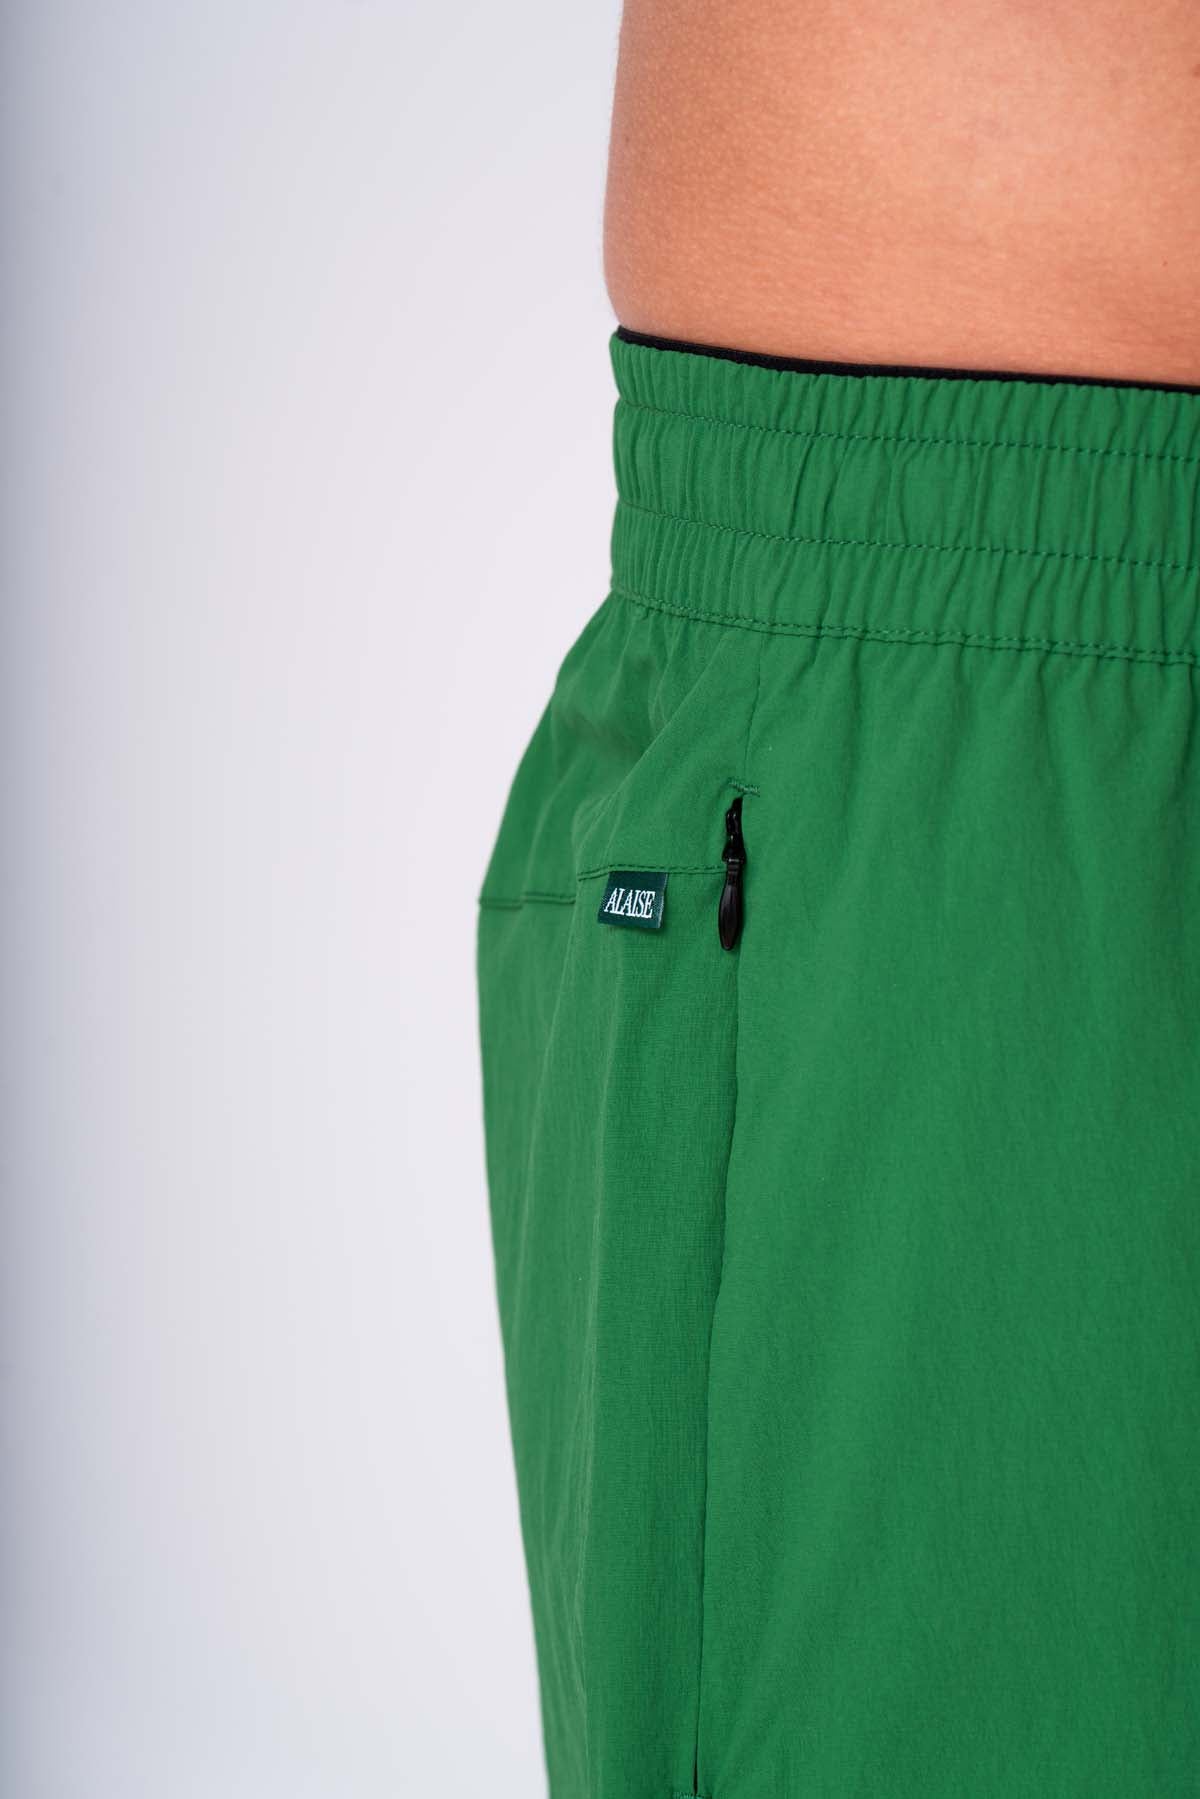 Alaise Active Shorts - Green